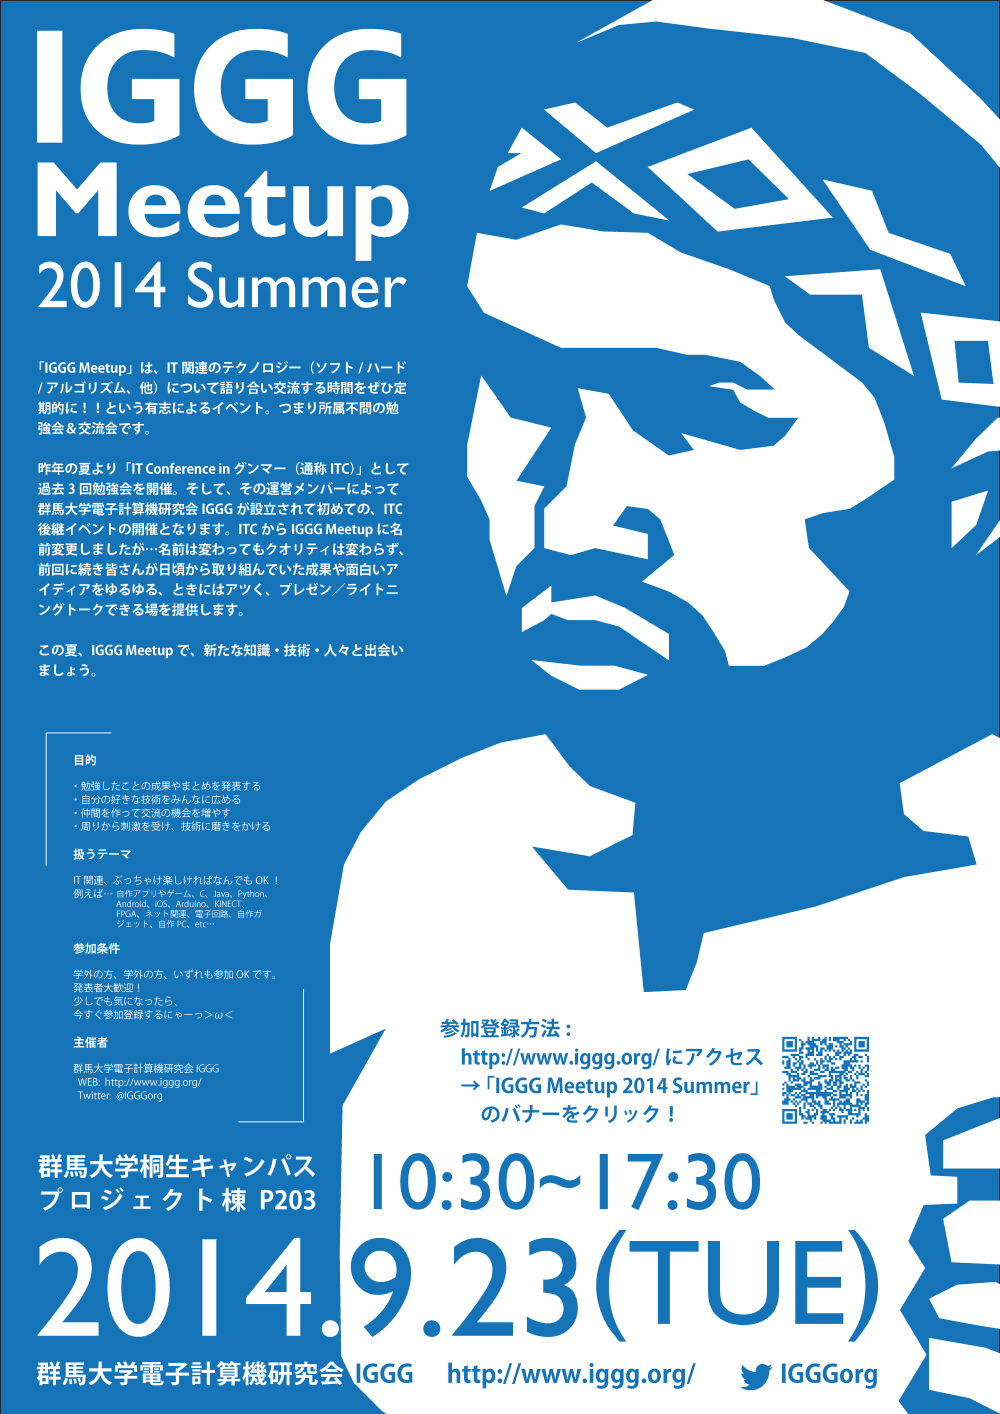 IGGG Meetup 2014 Summer